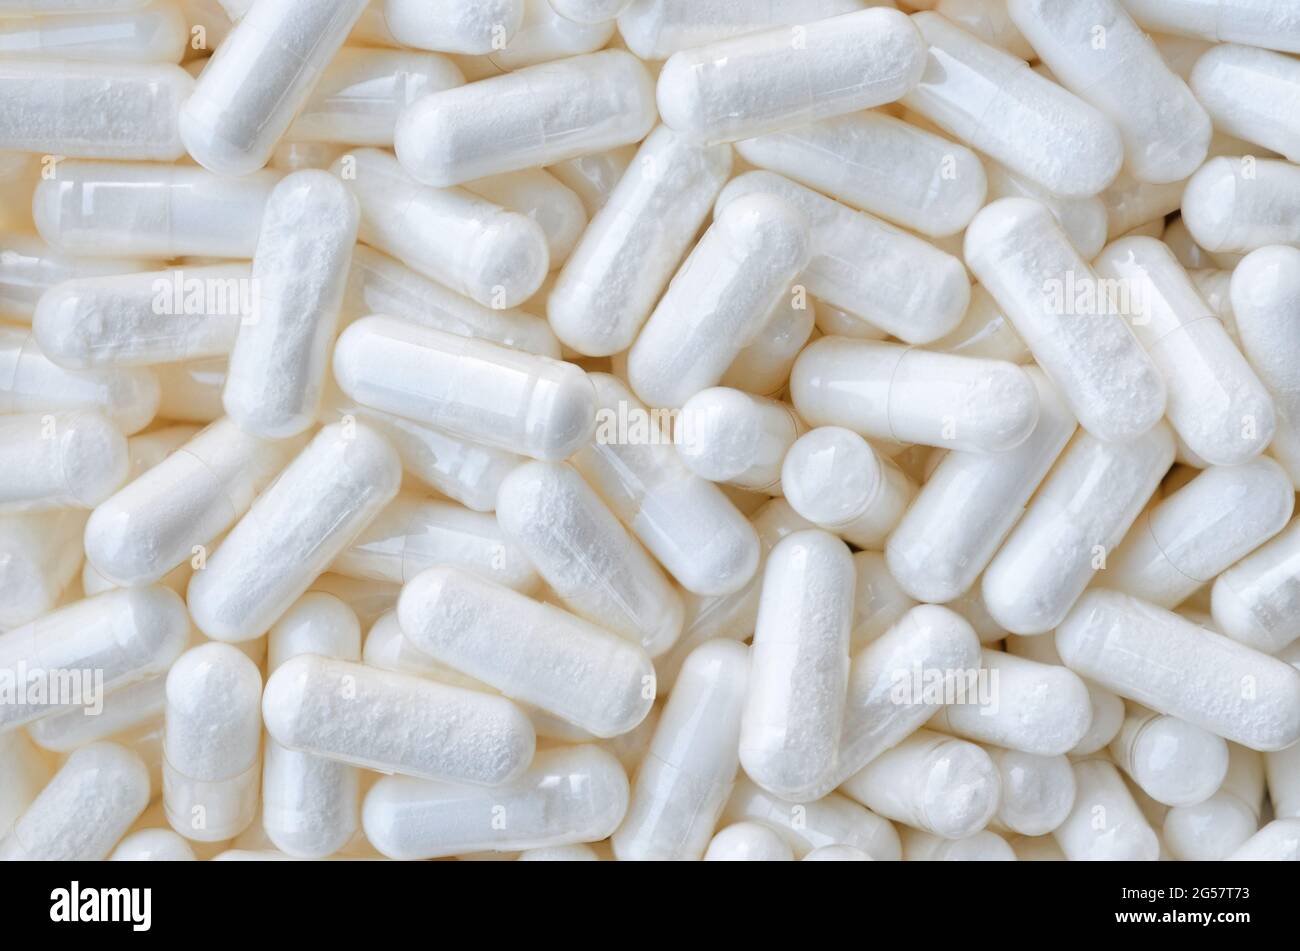 Un montón de pastillas-cápsulas blancas como fondo, vista superior. Concepto de salud. Foto de stock